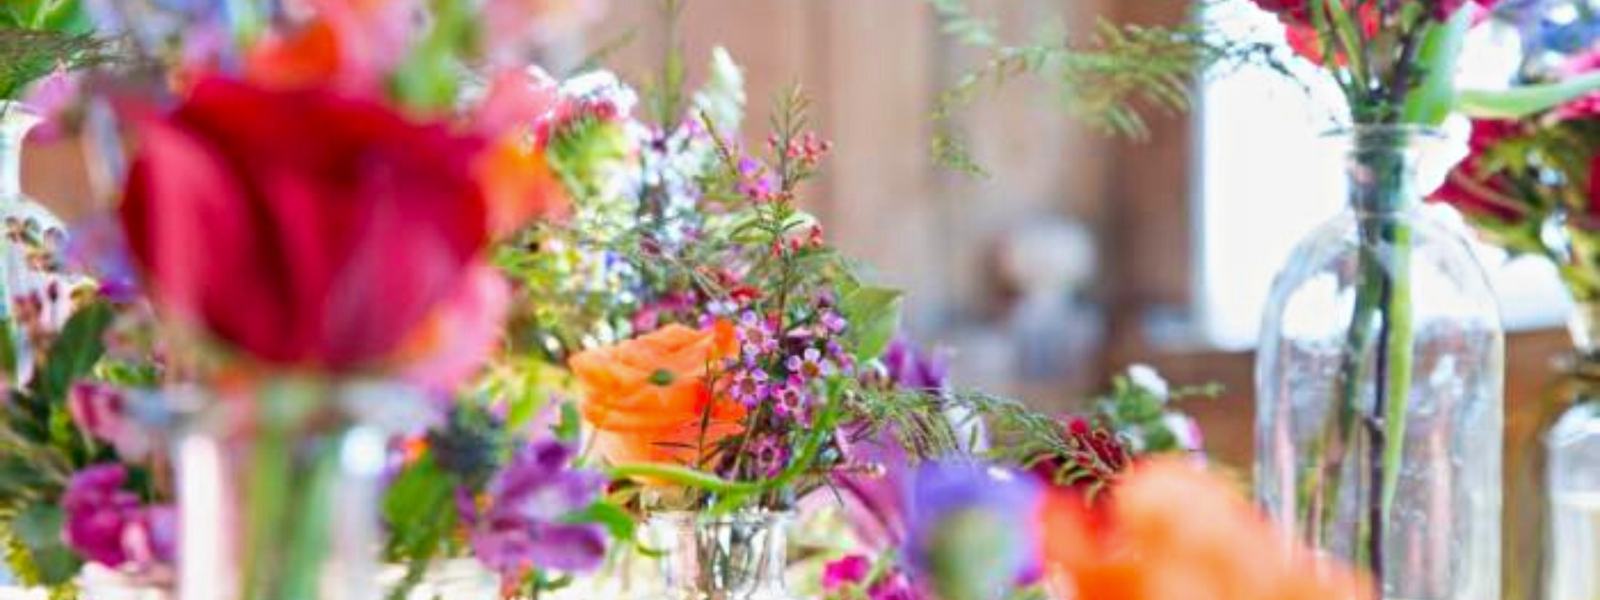 table flower arrangements, wedding decor, wedding venues, fabulous flowers